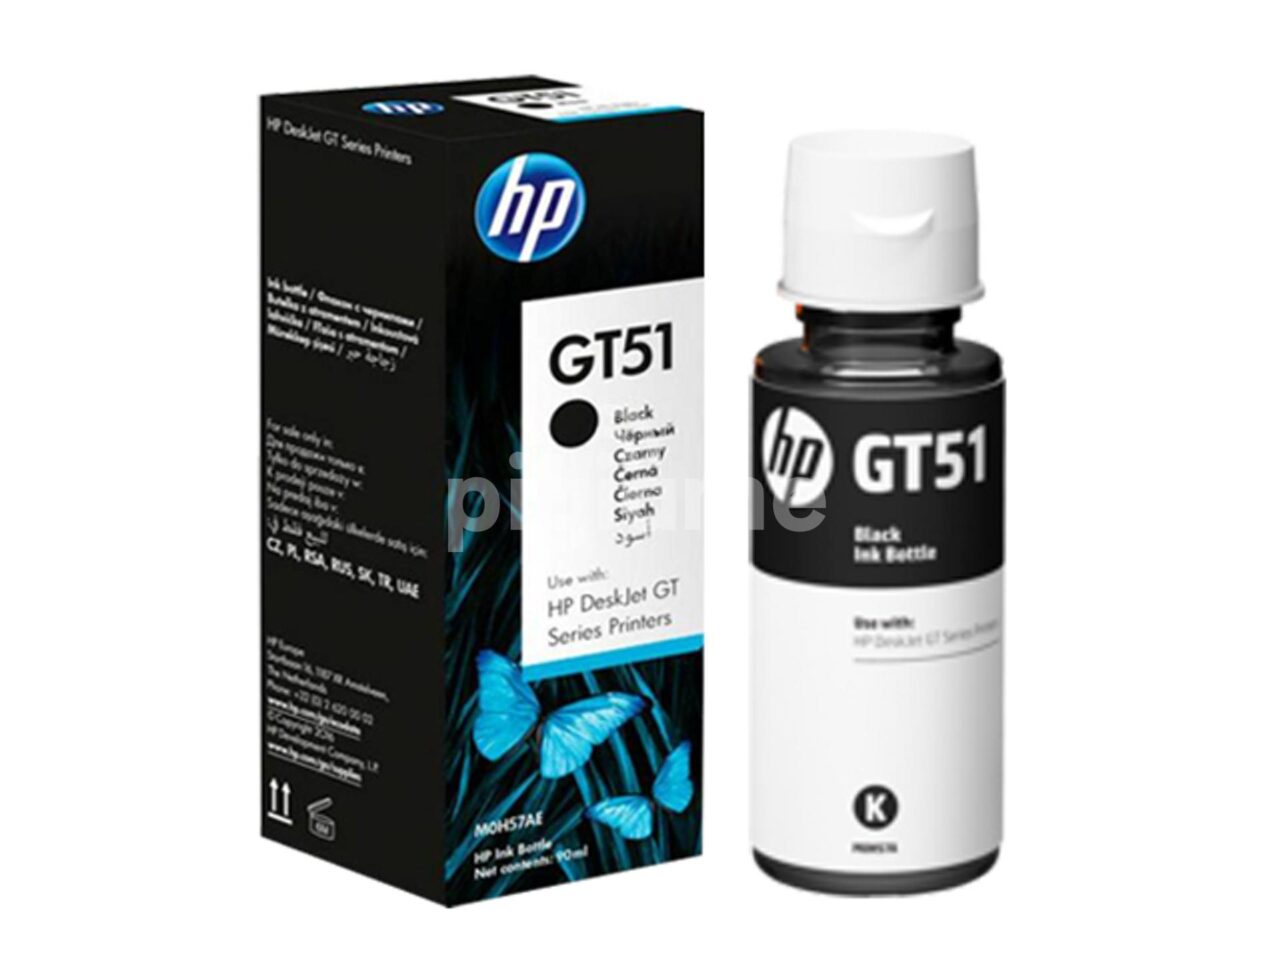 HP GT51 Black Original Ink Bottle